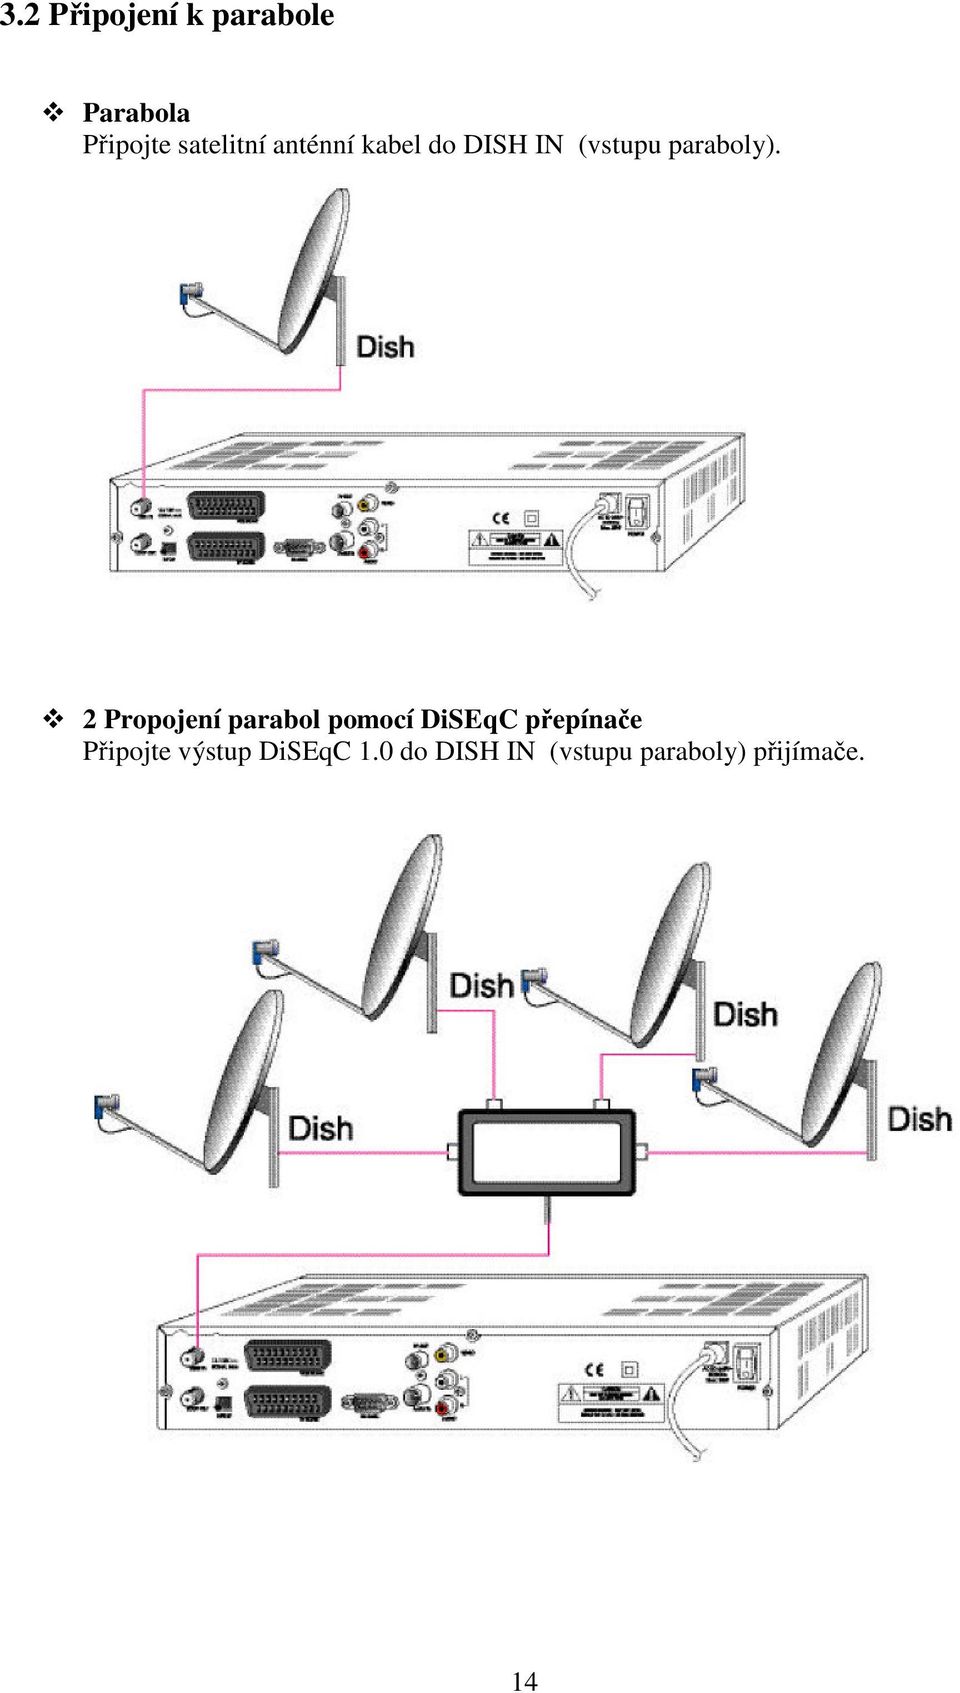 2 Propojení parabol pomocí DiSEqC pepínae Pipojte